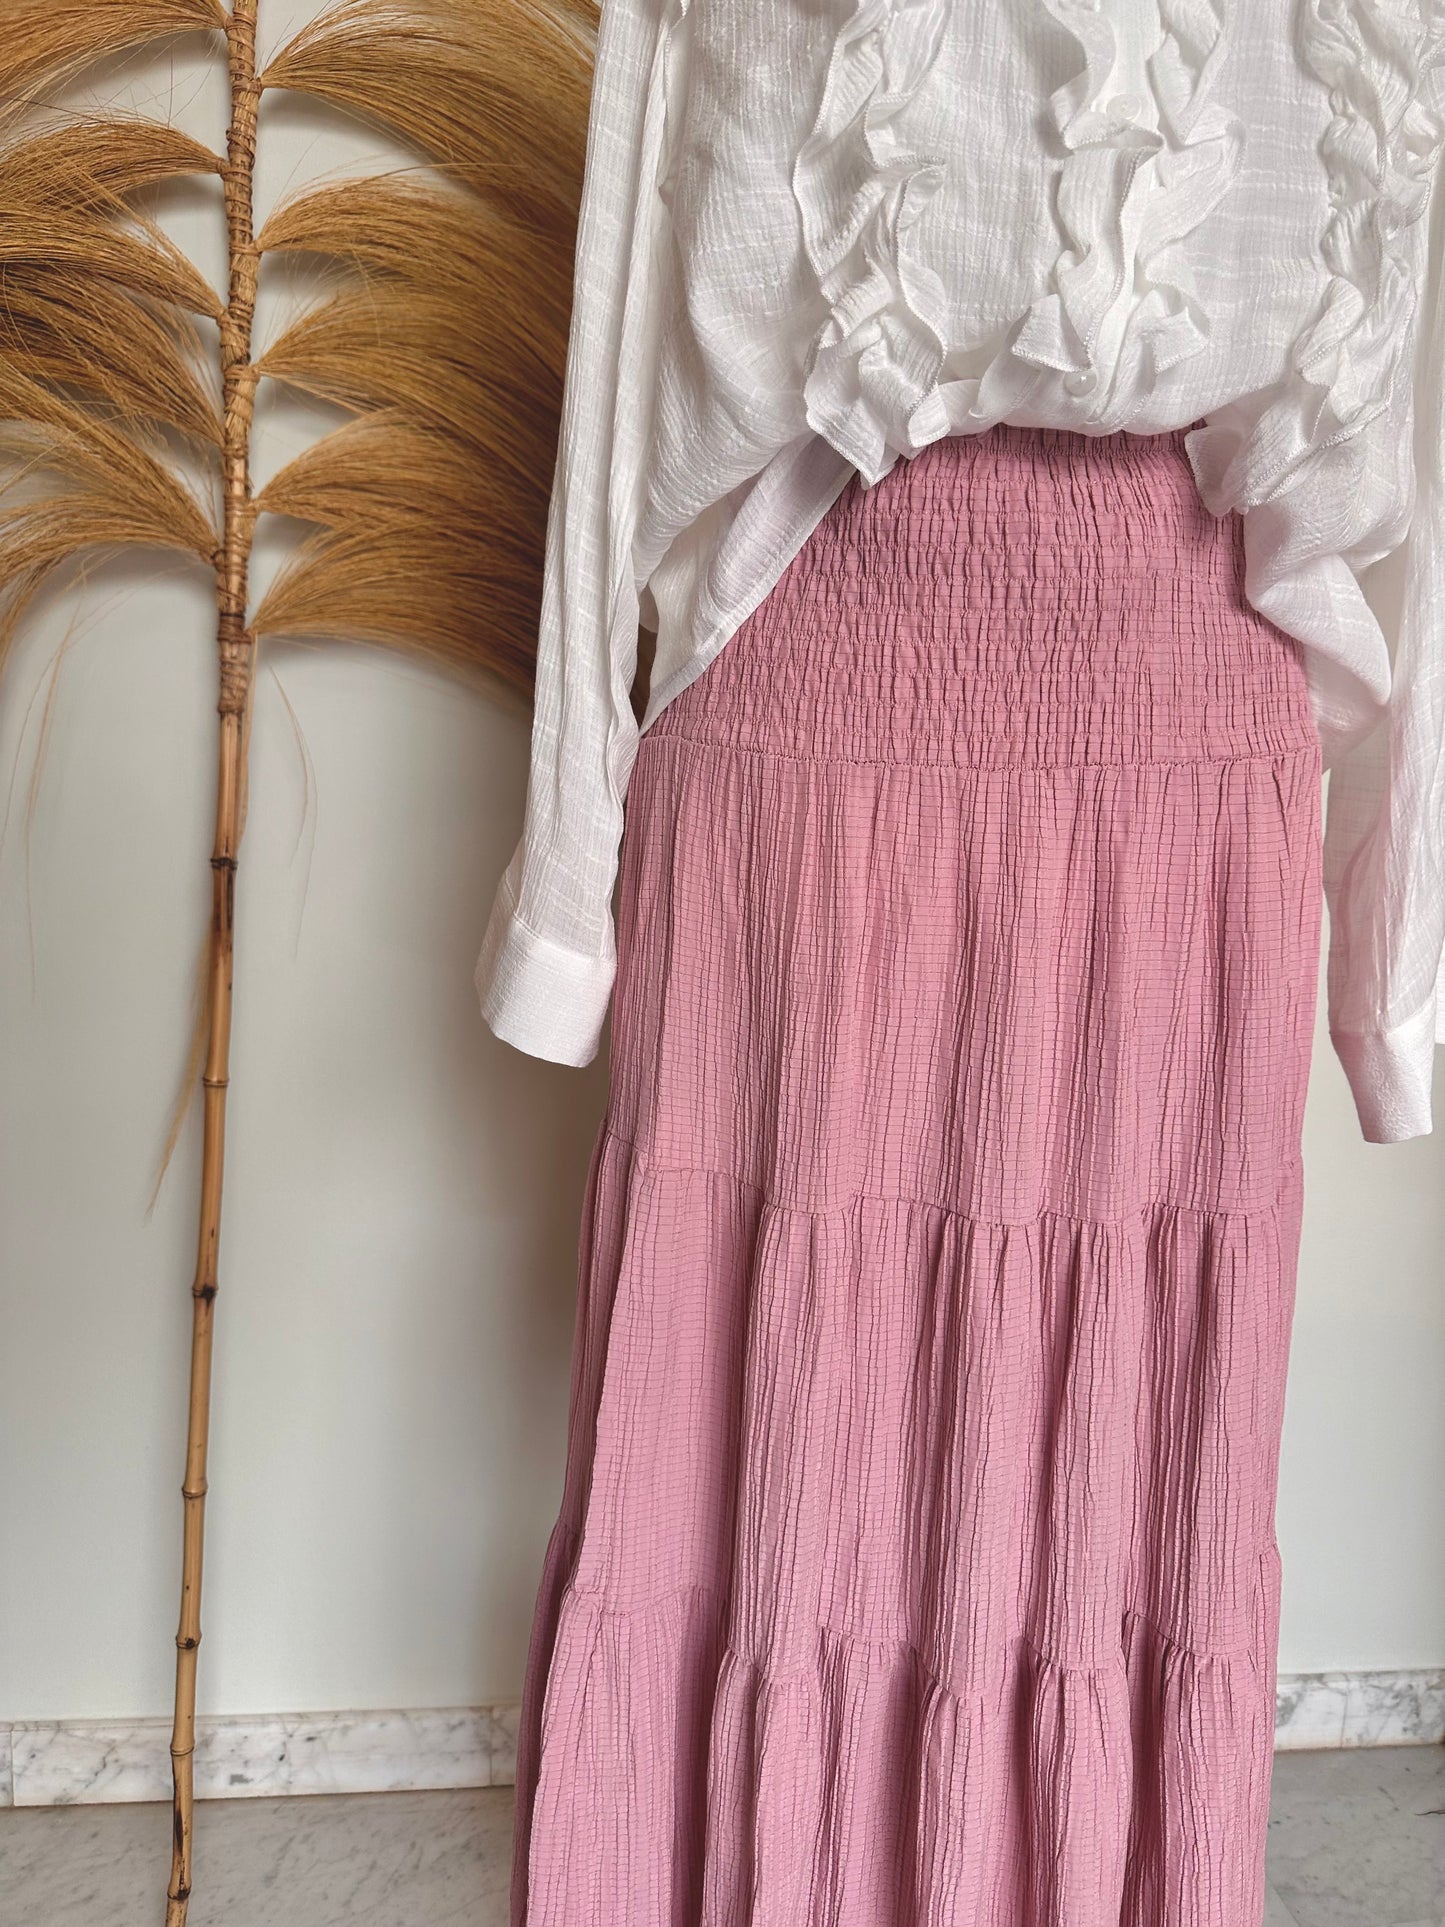 Falda bambula rosa